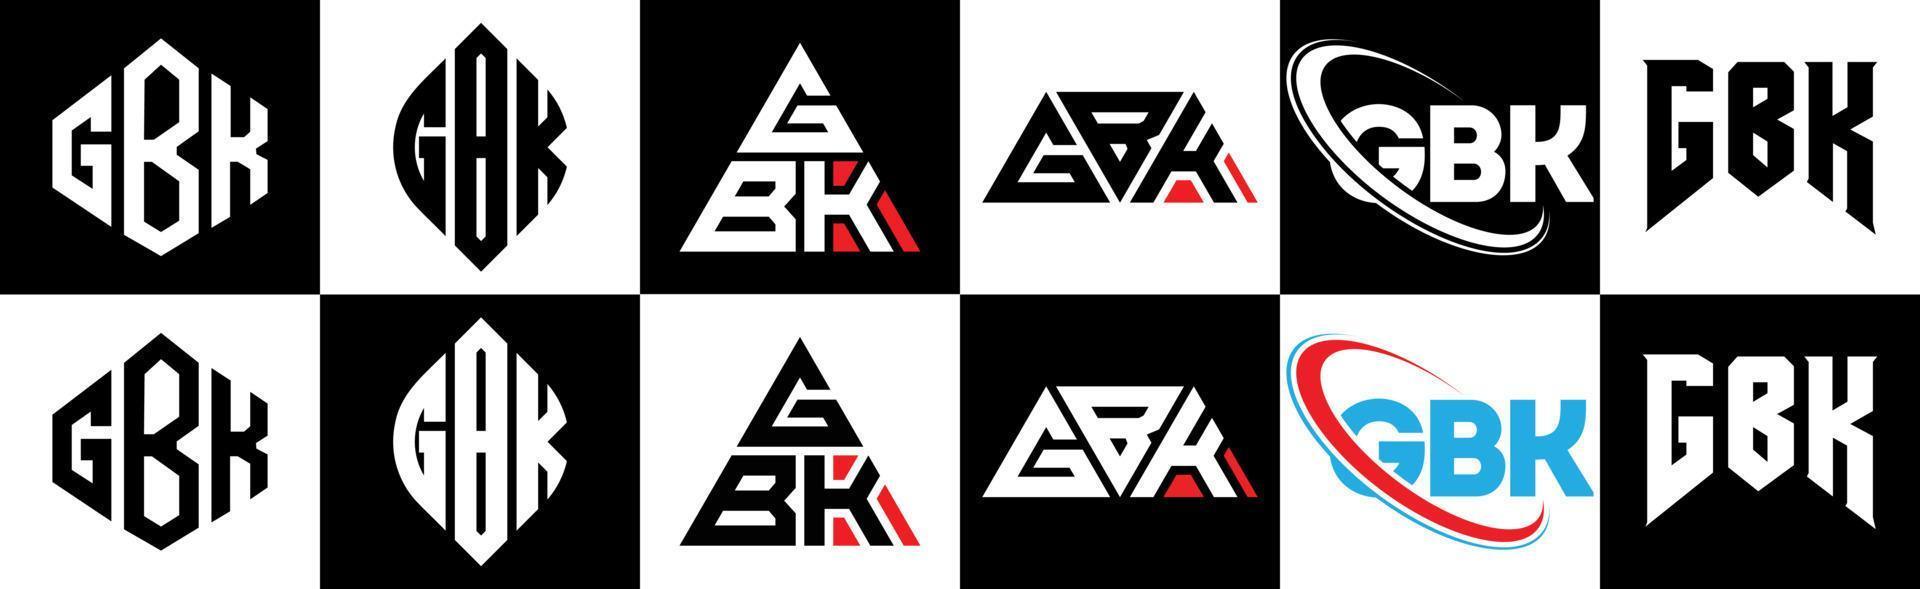 gbk-Buchstaben-Logo-Design in sechs Stilen. gbk polygon, kreis, dreieck, sechseck, flacher und einfacher stil mit schwarz-weißem buchstabenlogo in einer zeichenfläche. gbk minimalistisches und klassisches Logo vektor